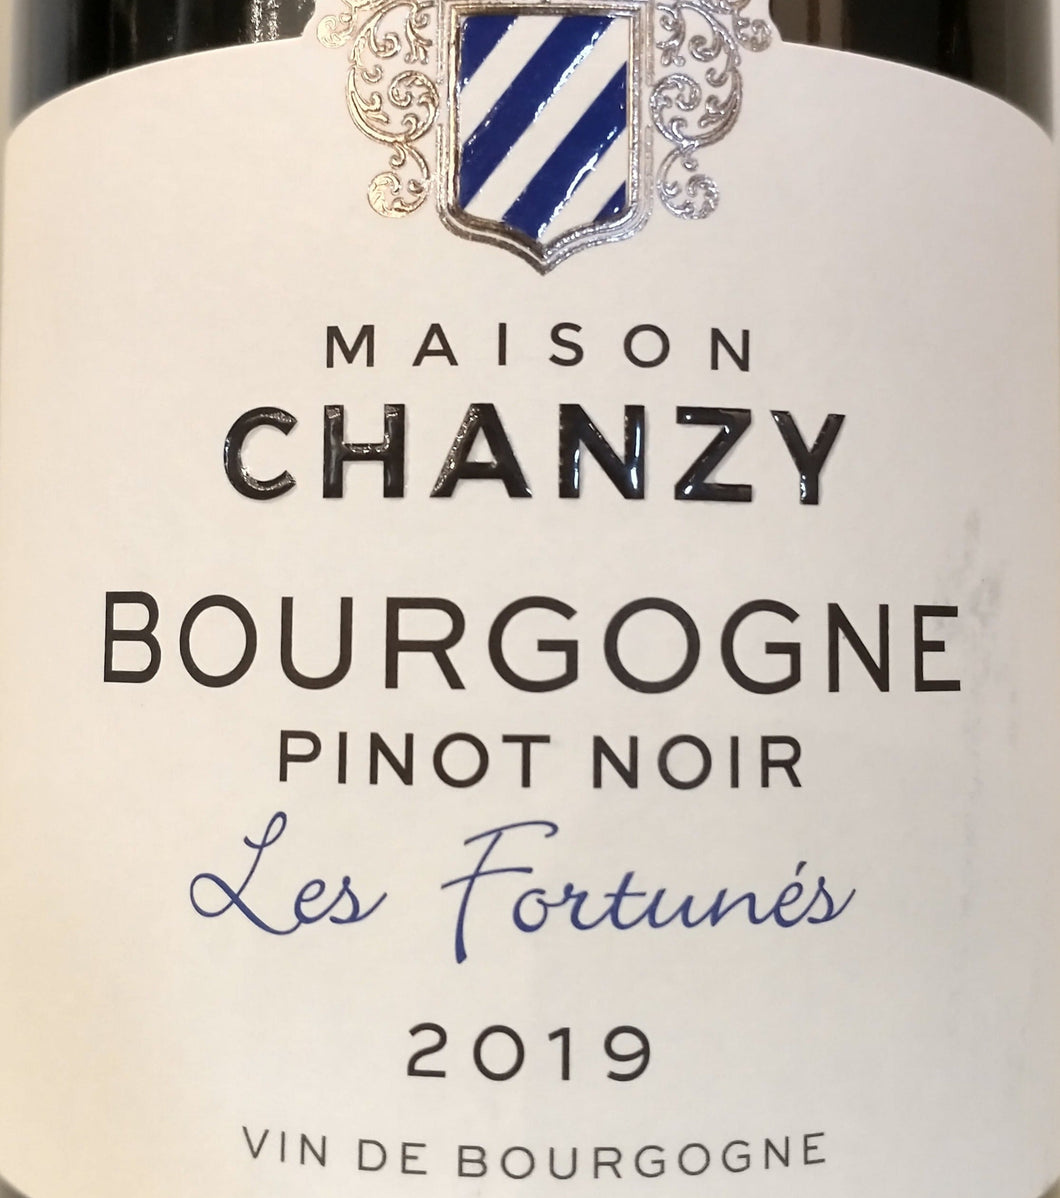 Maison Chanzy 'Les Fortunes' - Bourgogne Pinot Noir